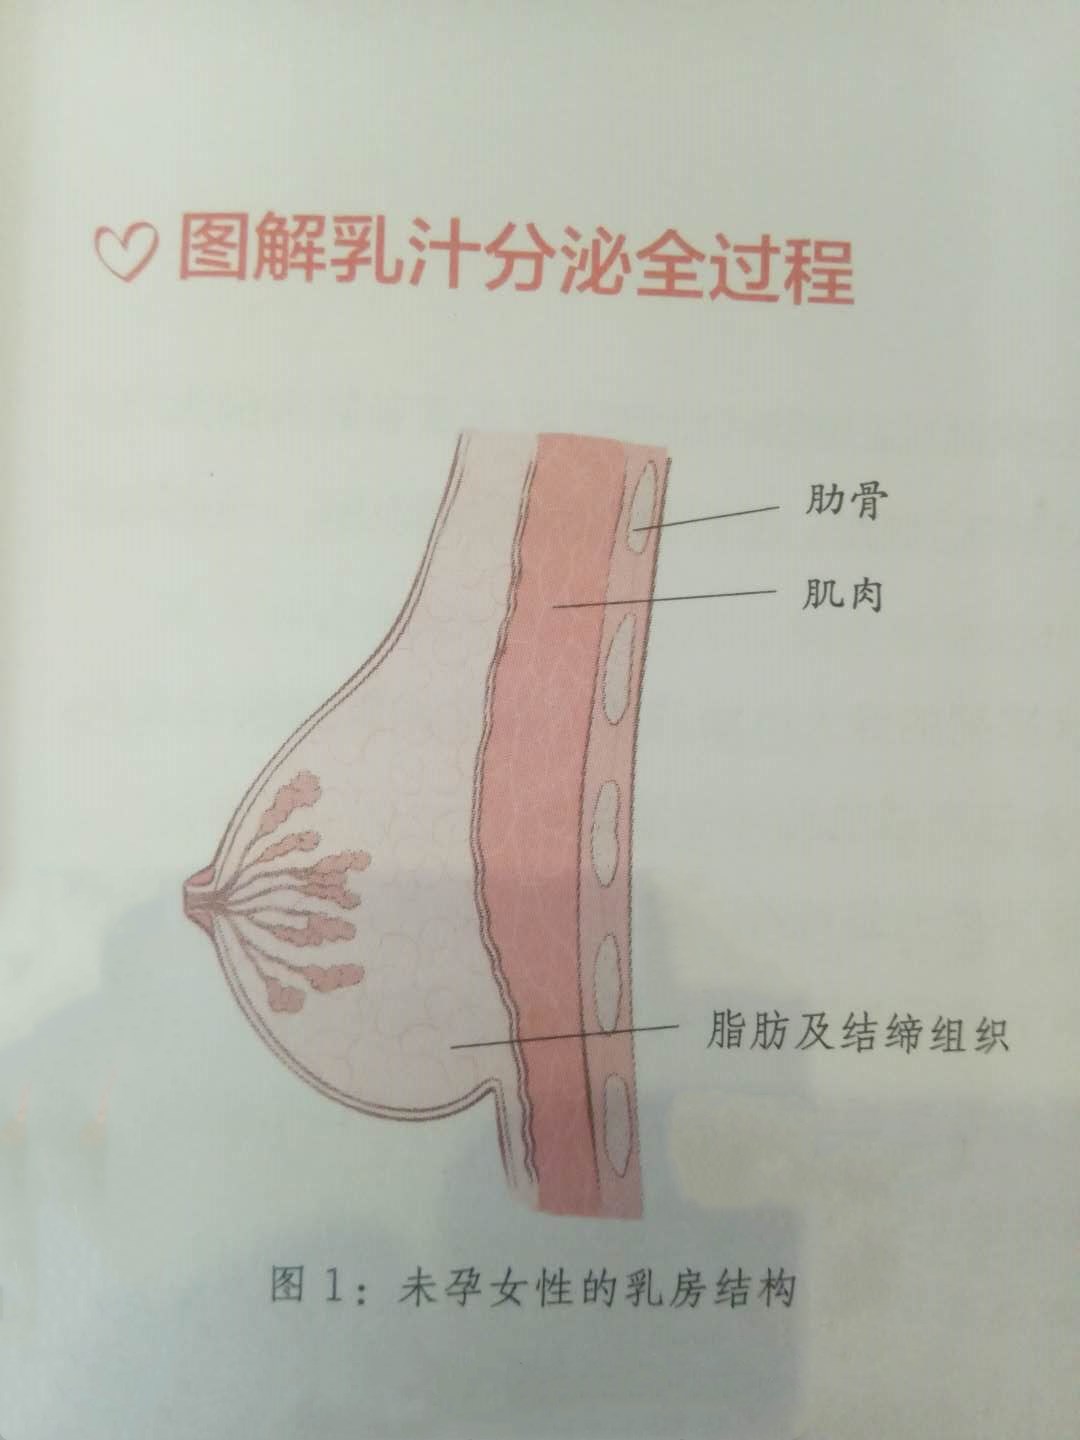 用图告诉你母乳产生的神奇过程